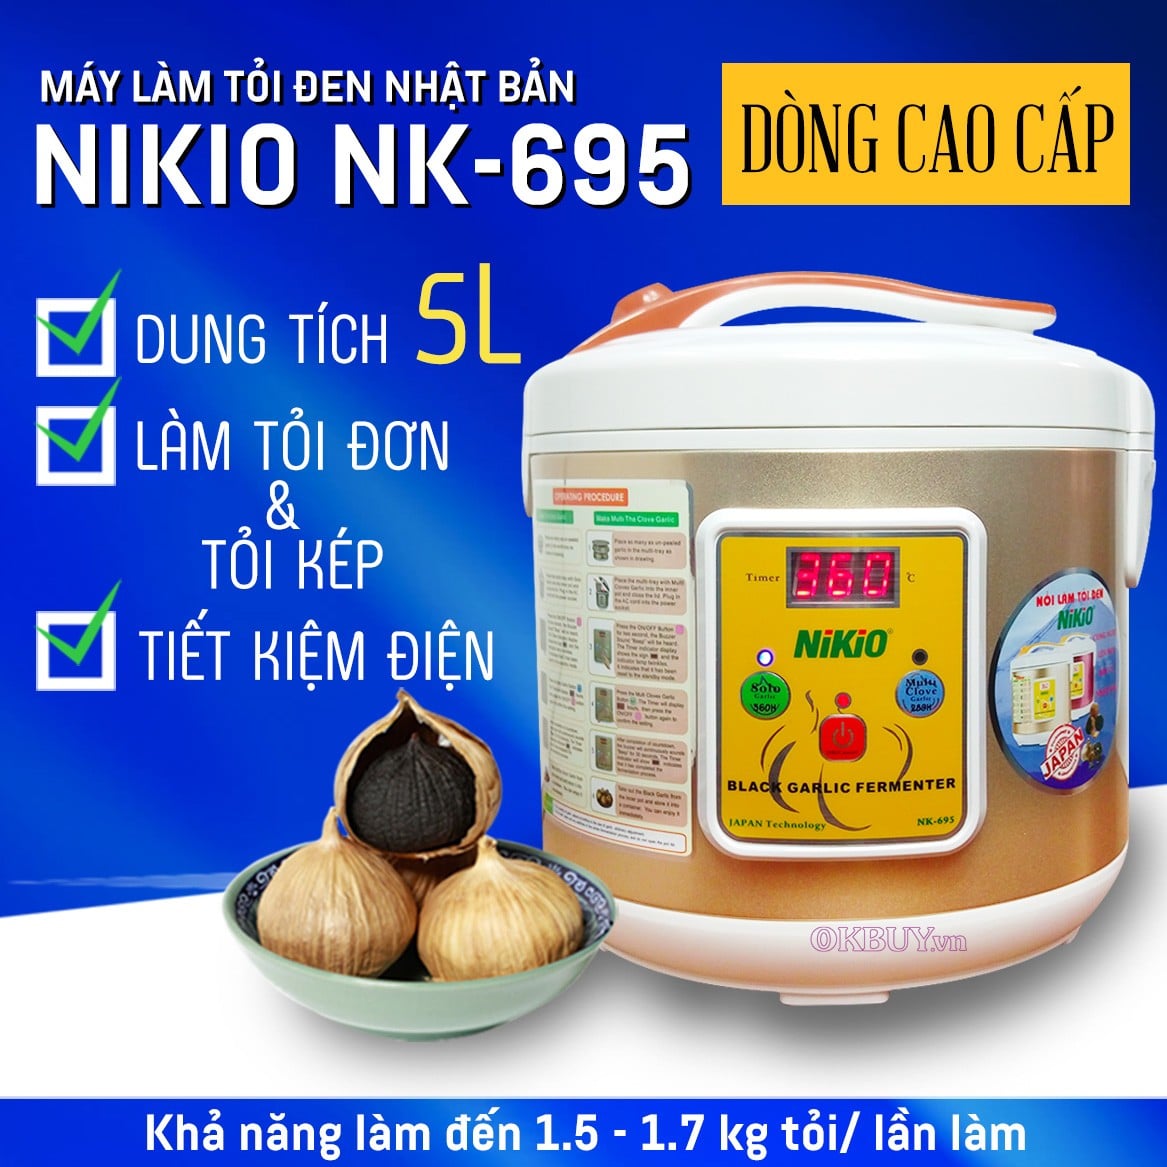 Máy làm tỏi đen Nhật Bản Nikio NK-695/ 5 lít - Dòng cao cấp